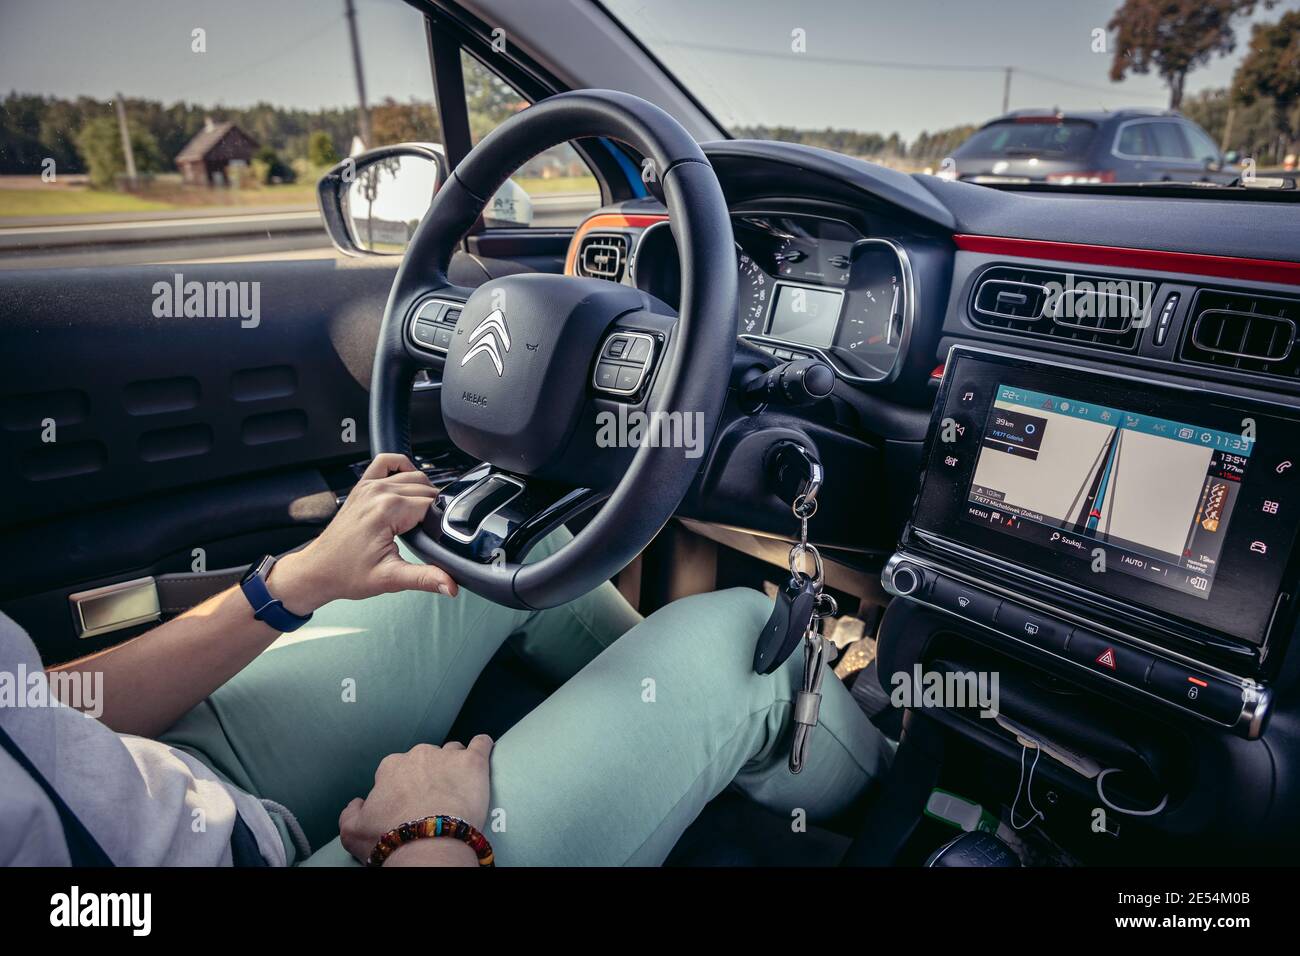 Femme conduisant une voiture Citroën C3 Banque D'Images